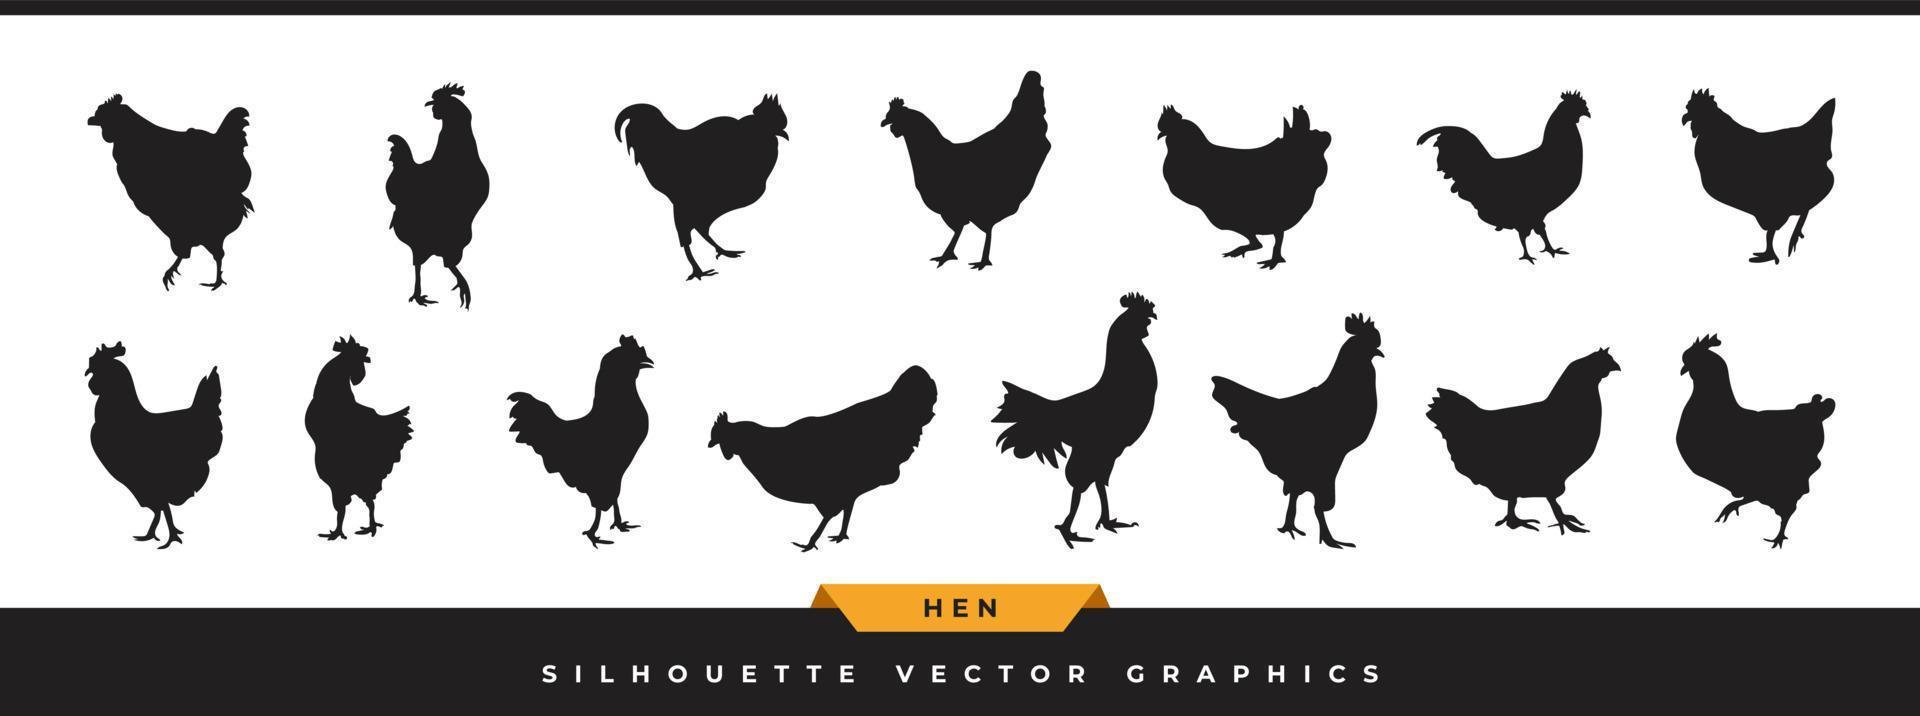 Henne-Silhouette-Vektor-Sammlung. große reihe von hühnersilhouetten-symbolen. ClipArt von Hahn oder Henne ist in verschiedenen Posen isoliert auf weißem Hintergrund. vektor